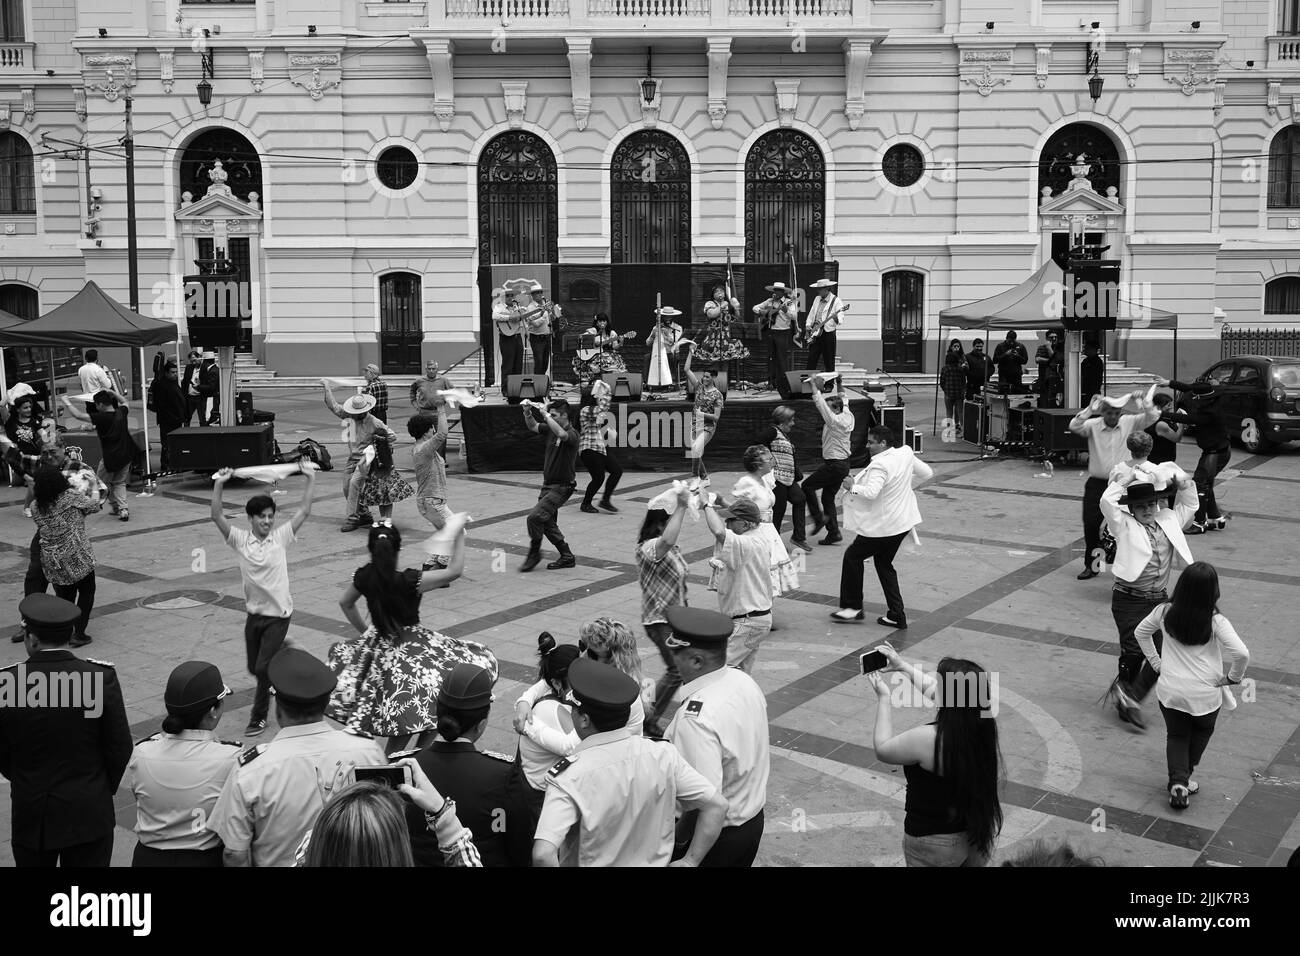 Nahaufnahme von Menschen, die einen traditionellen Tanz auf der Plaza Sotomayor, Valparaiso, Chile, tanzen Stockfoto